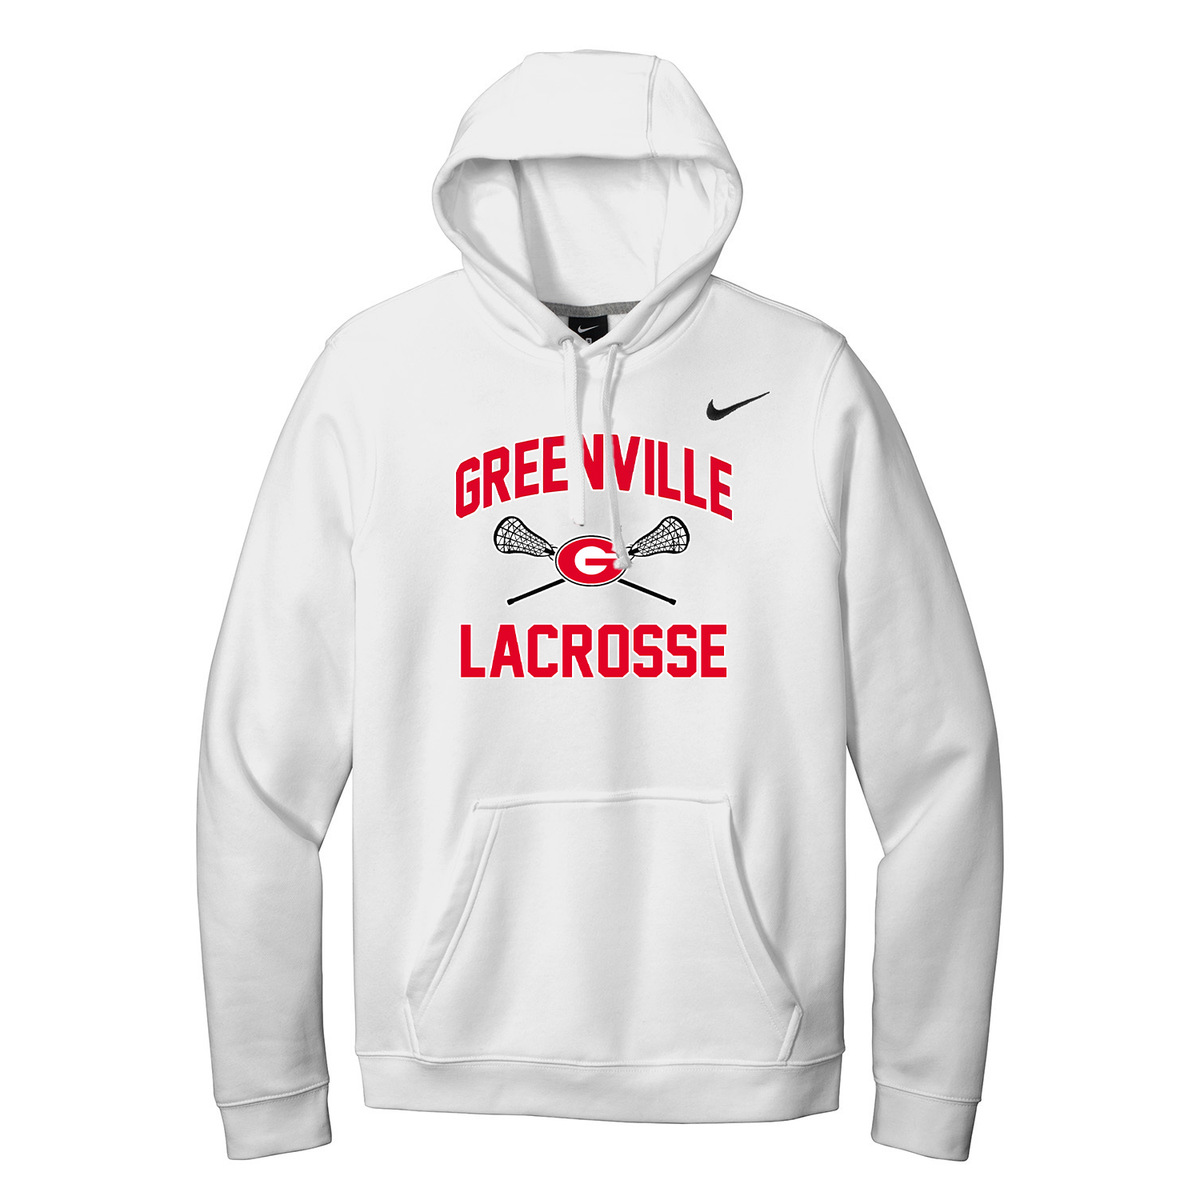 Greenville Girls Lacrosse Nike Fleece Sweatshirt